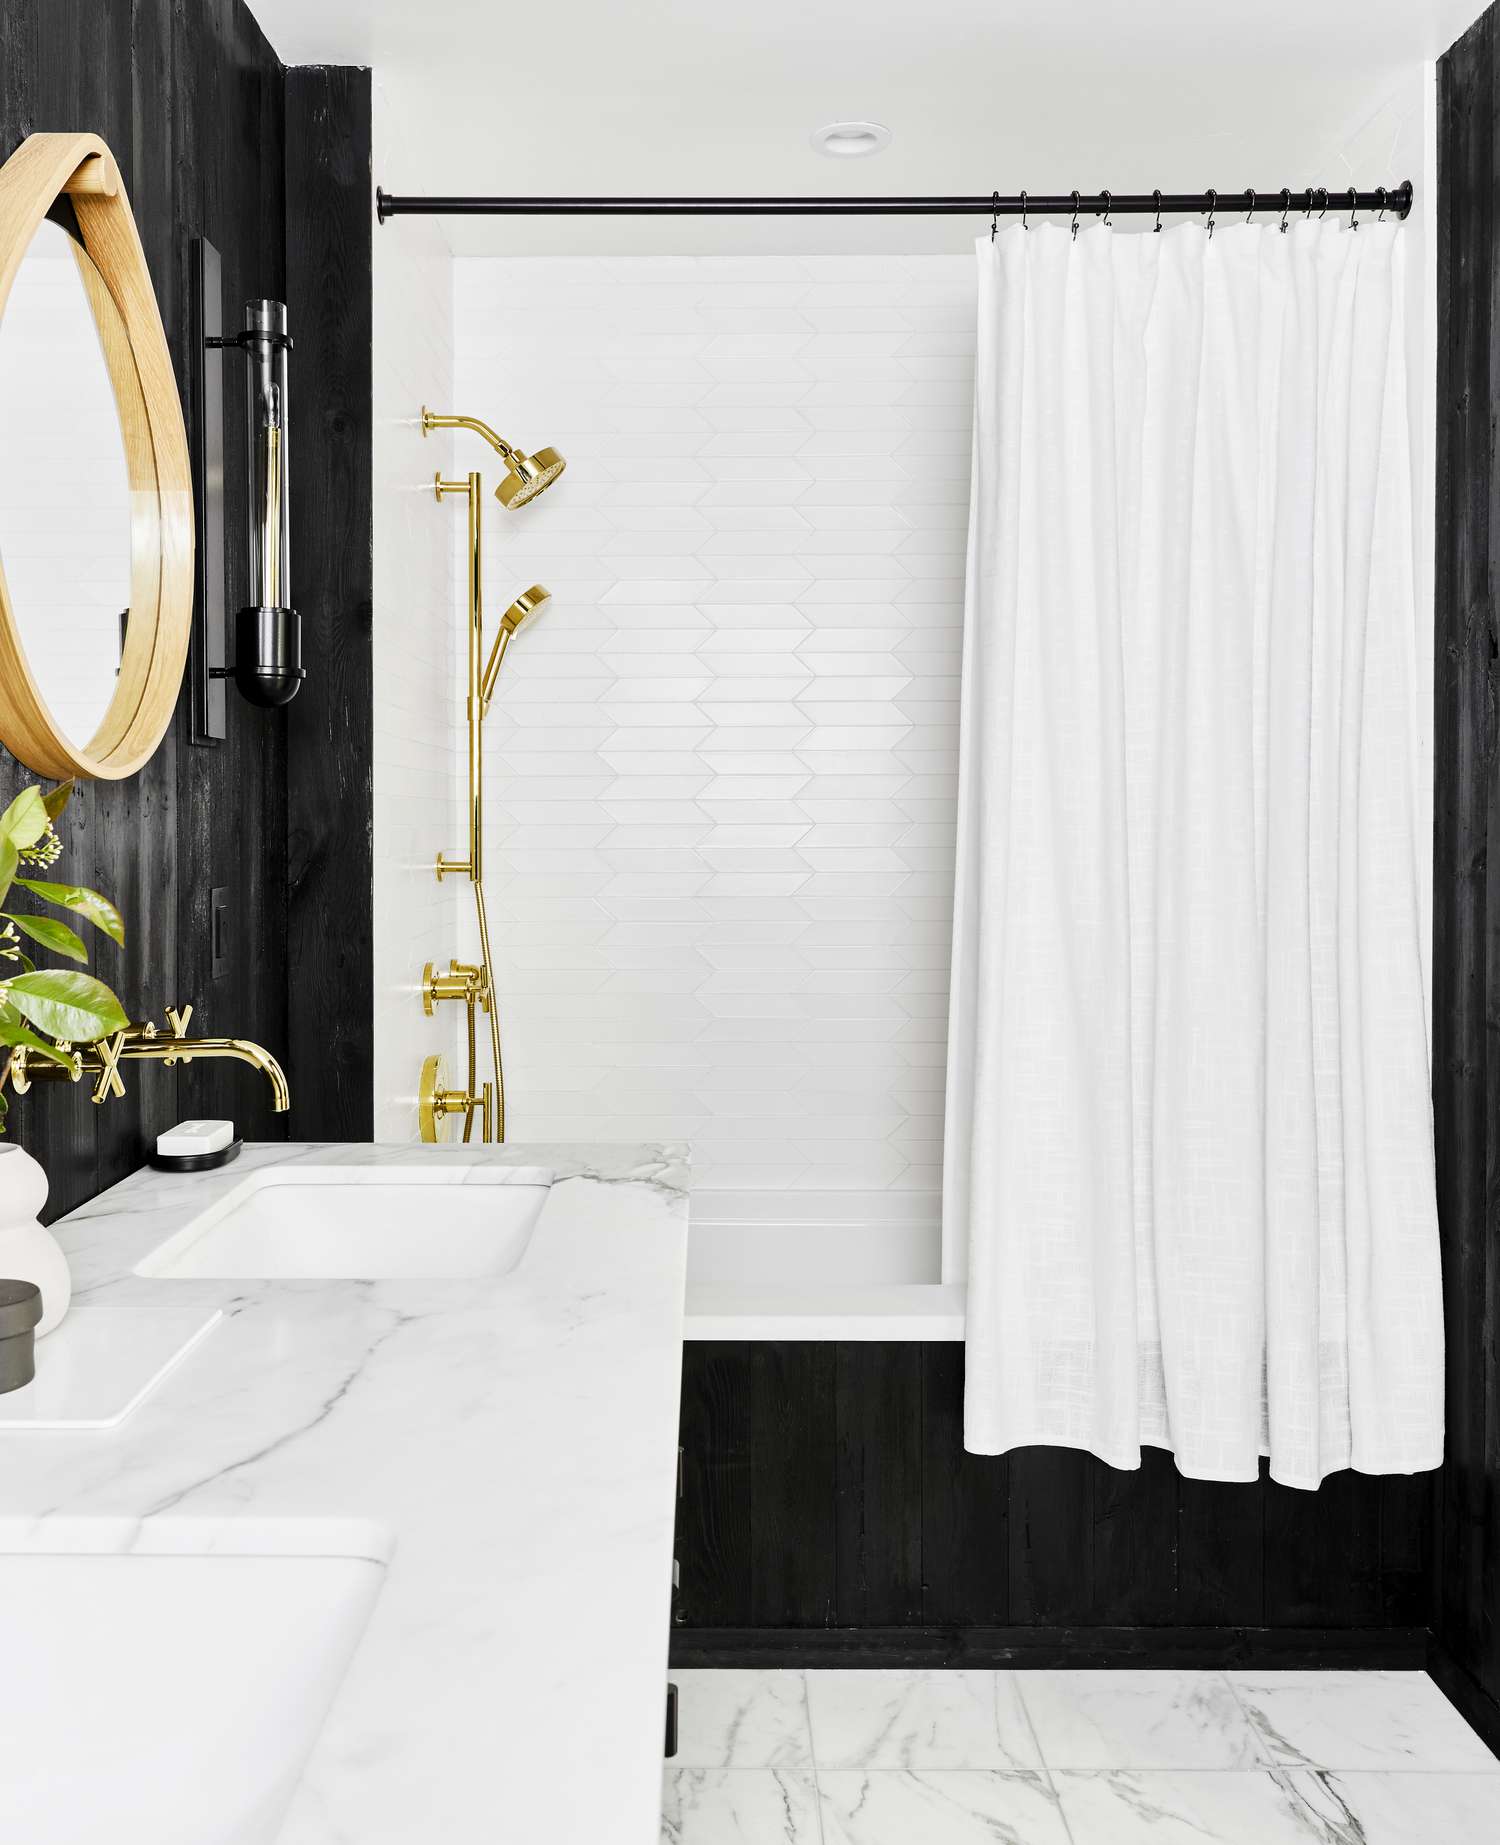 Ein schwarzes Badezimmer hat einen weißen Duschvorhang über der Wanne hängen